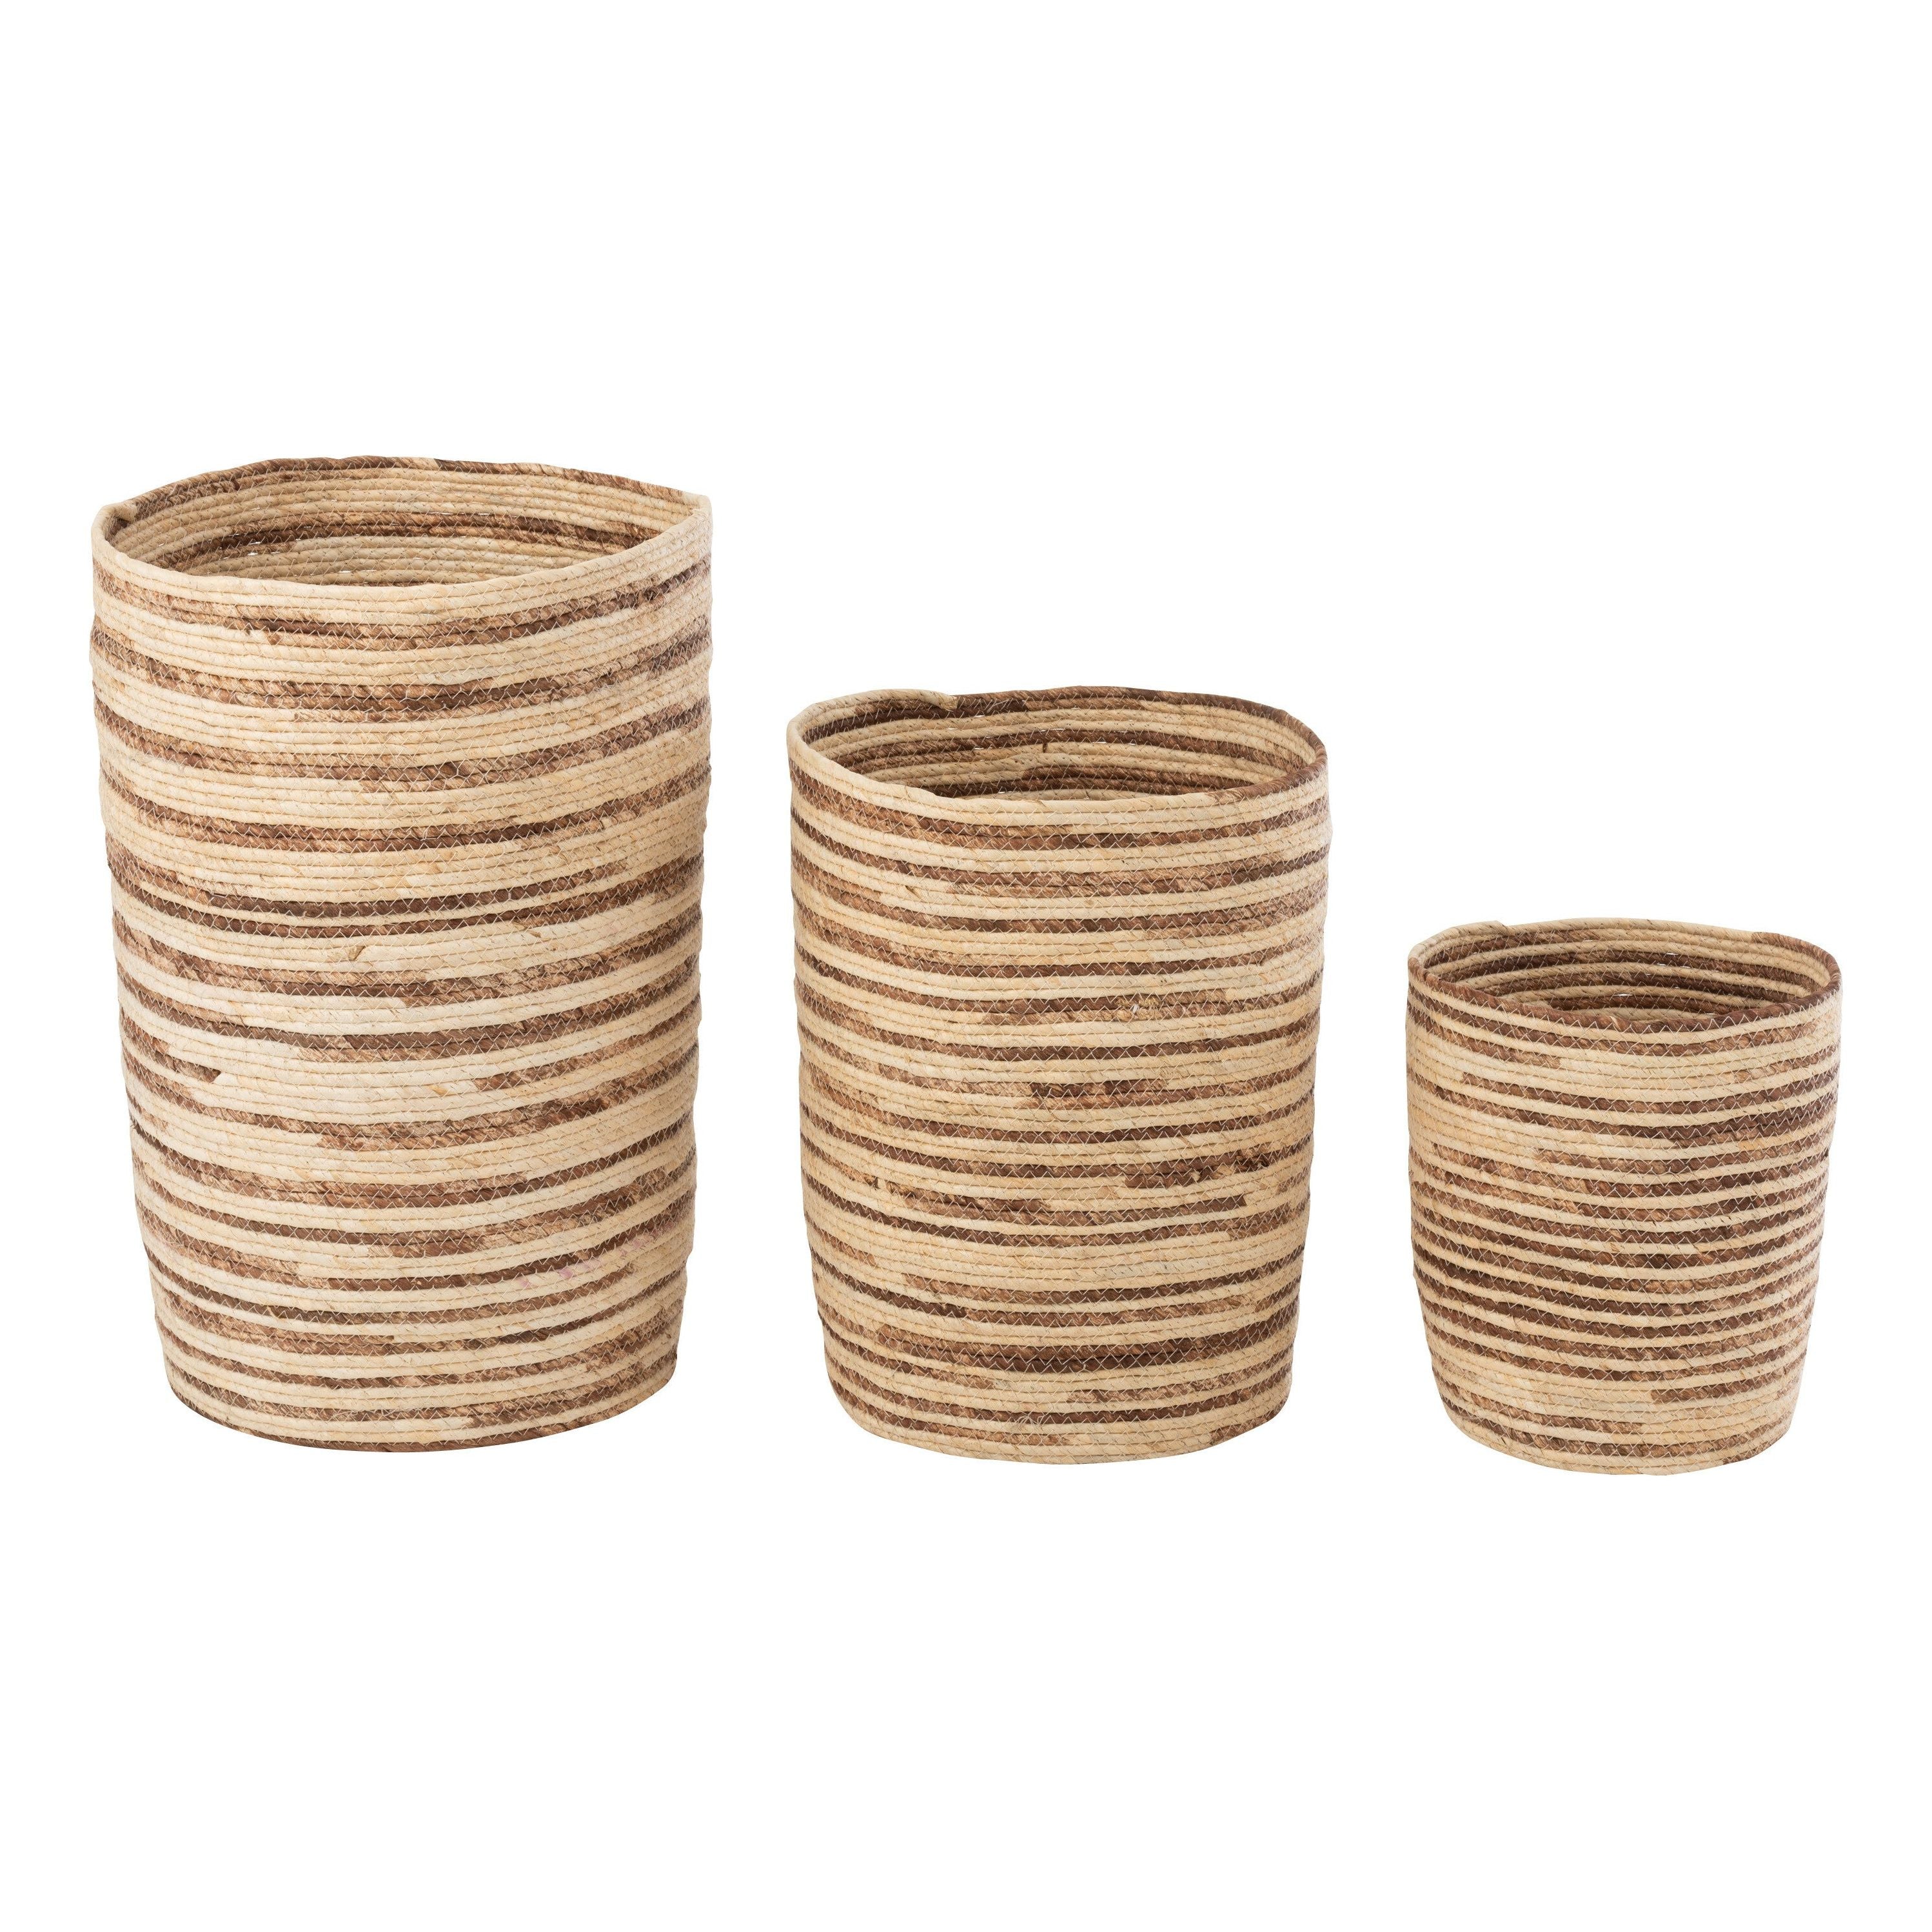 Baskets Corn Beige/brown